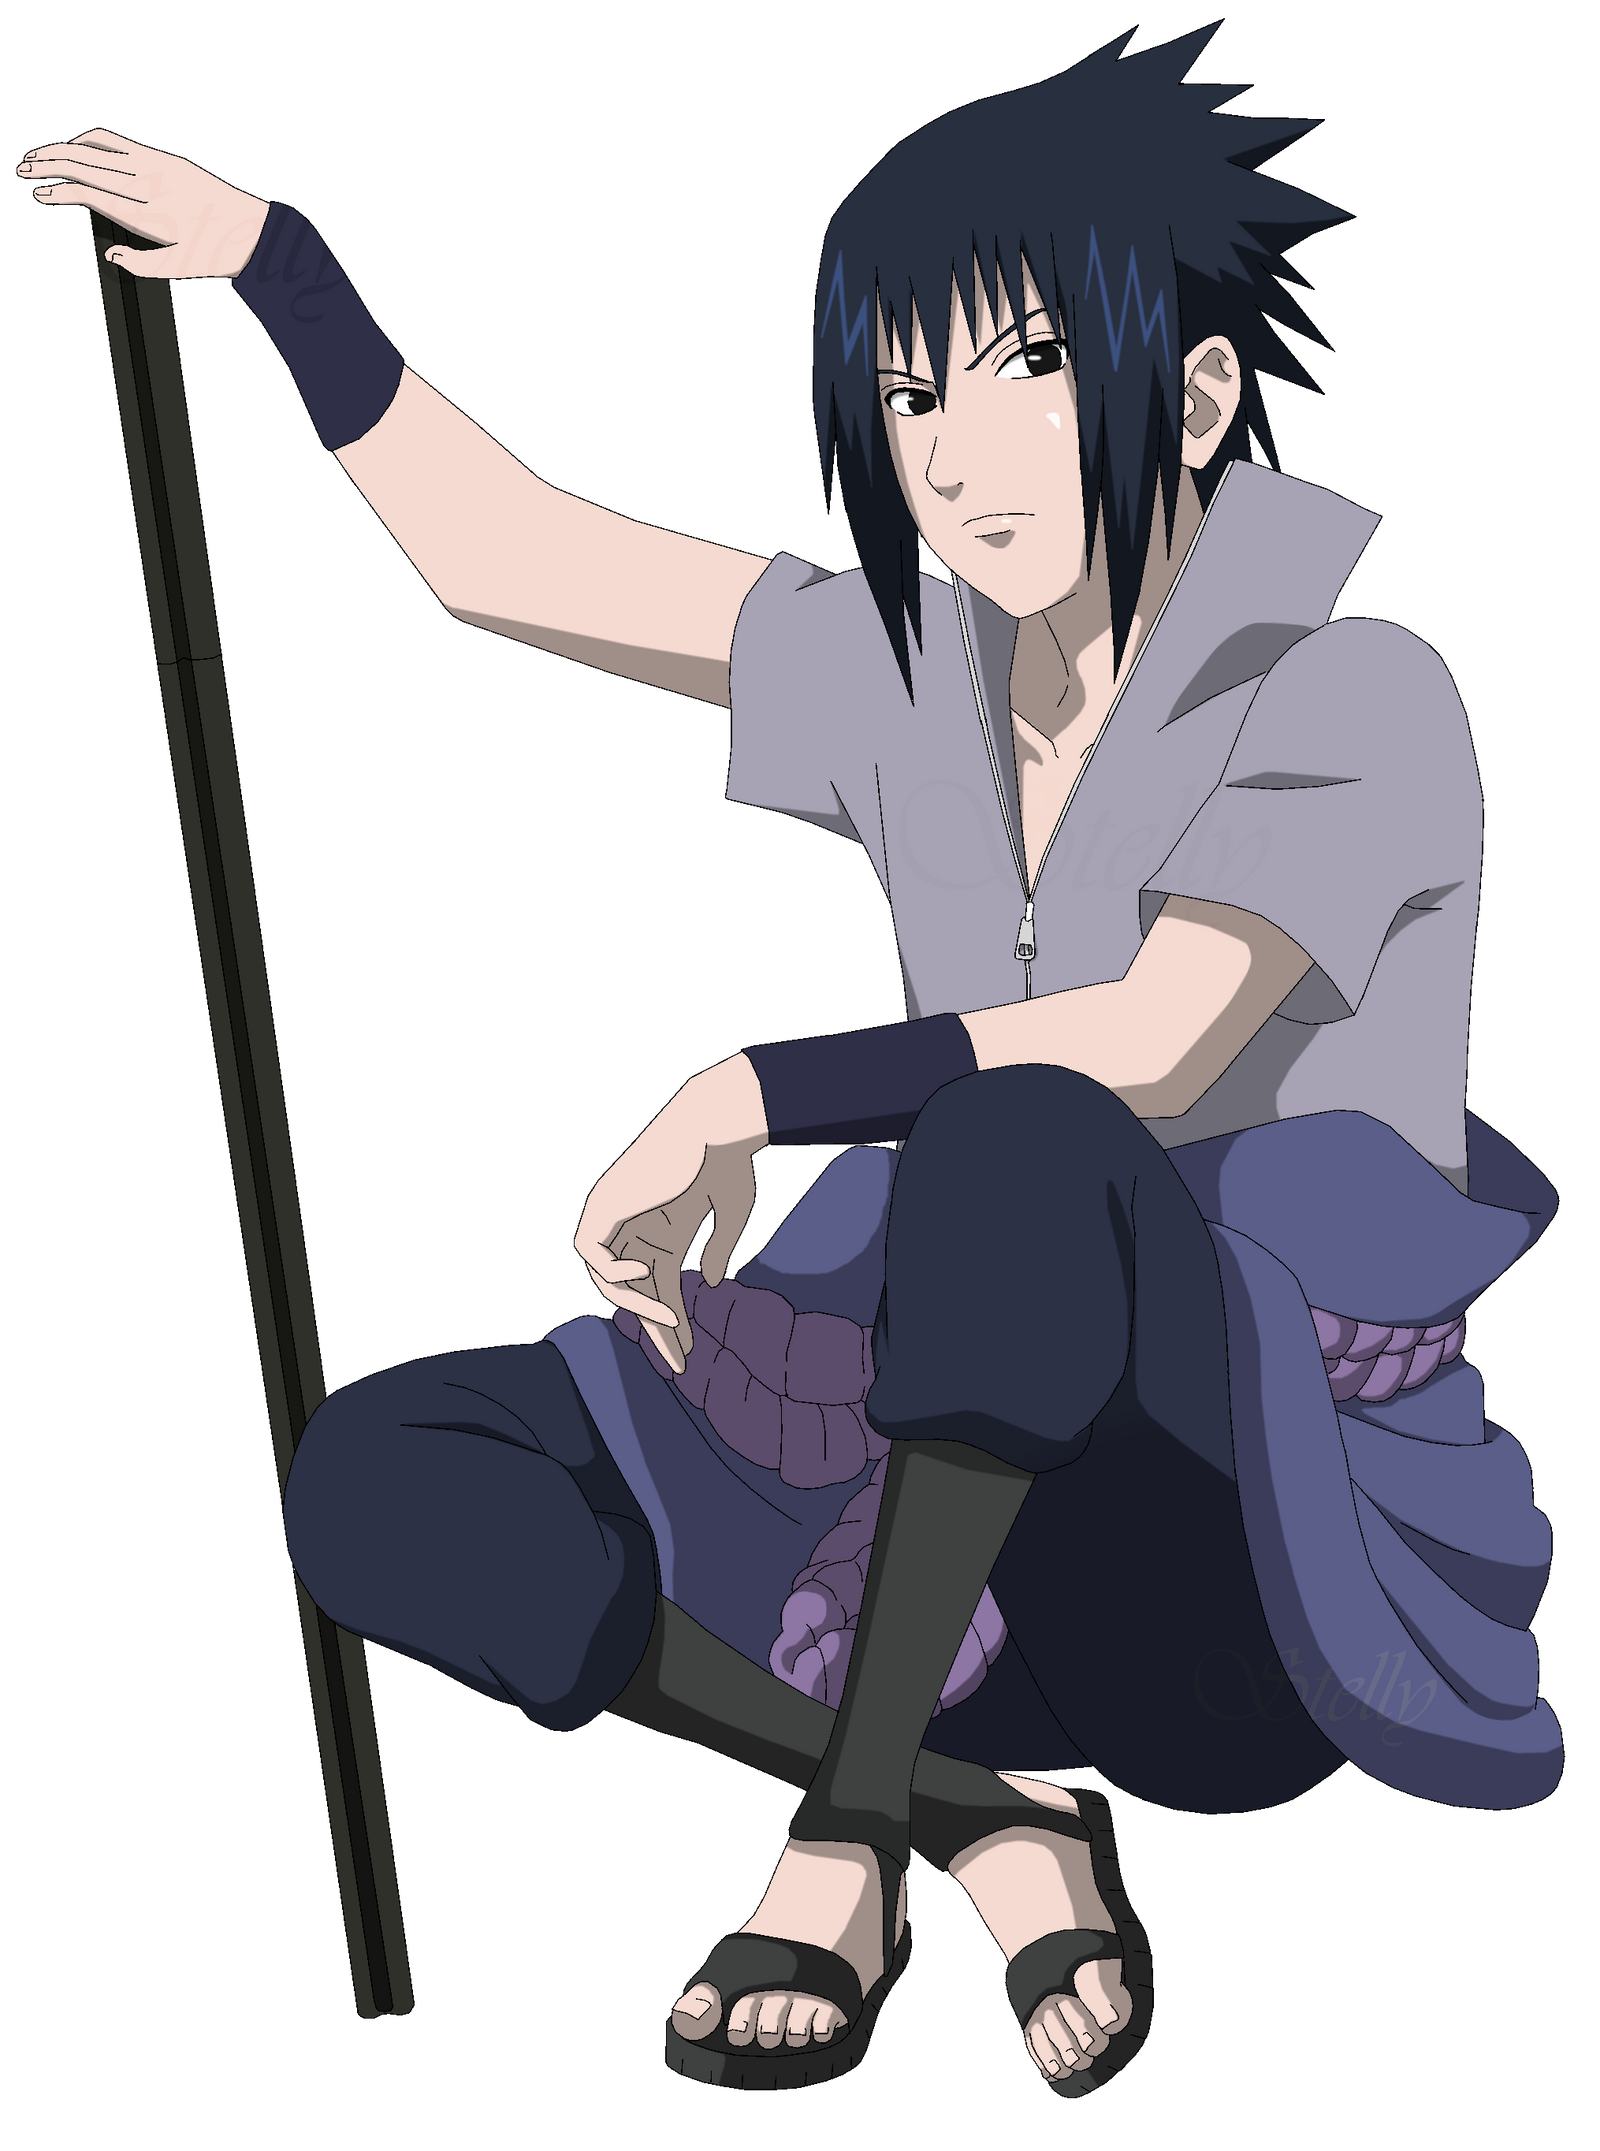 Sasuke sitting - Lineart Colored by DennisStelly on DeviantArt - Modern Sasuke